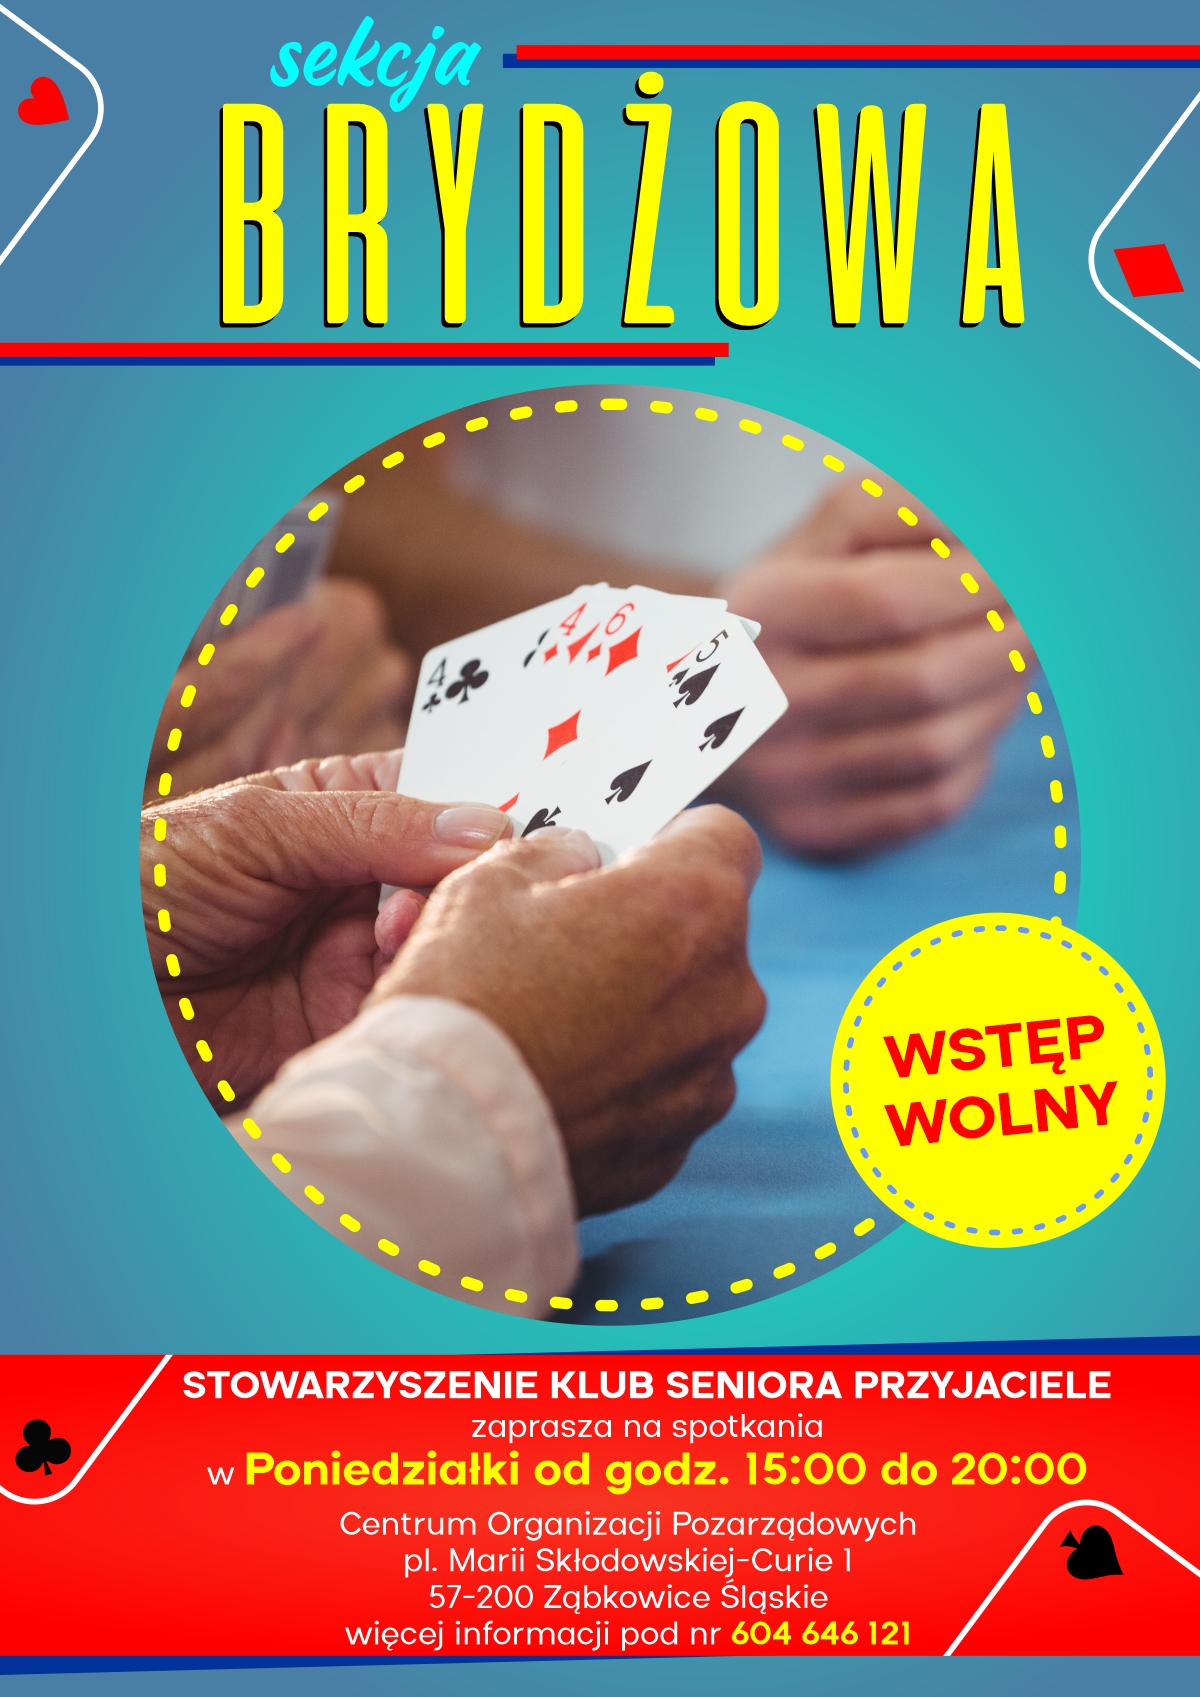 Plakat informujący o sekcji Brydżowej w poniedziałki od godziny 15:00 w COP w Ząbkowicach Śląskich.